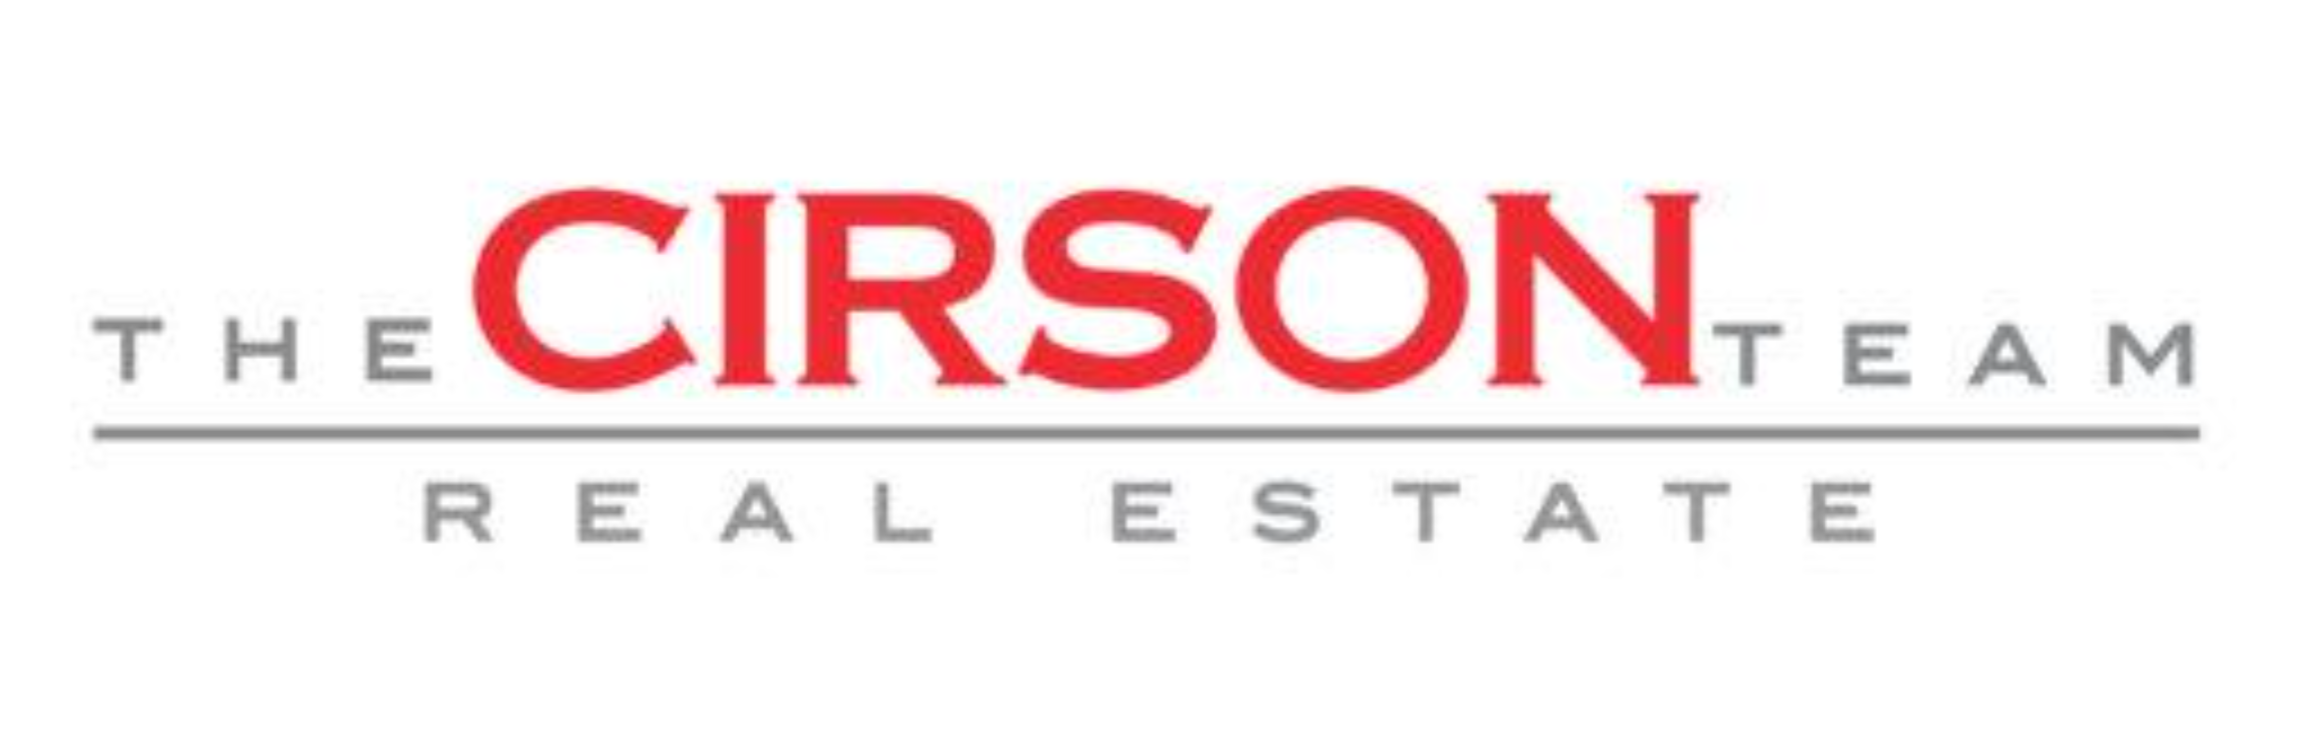 Cirson Team Real Estate